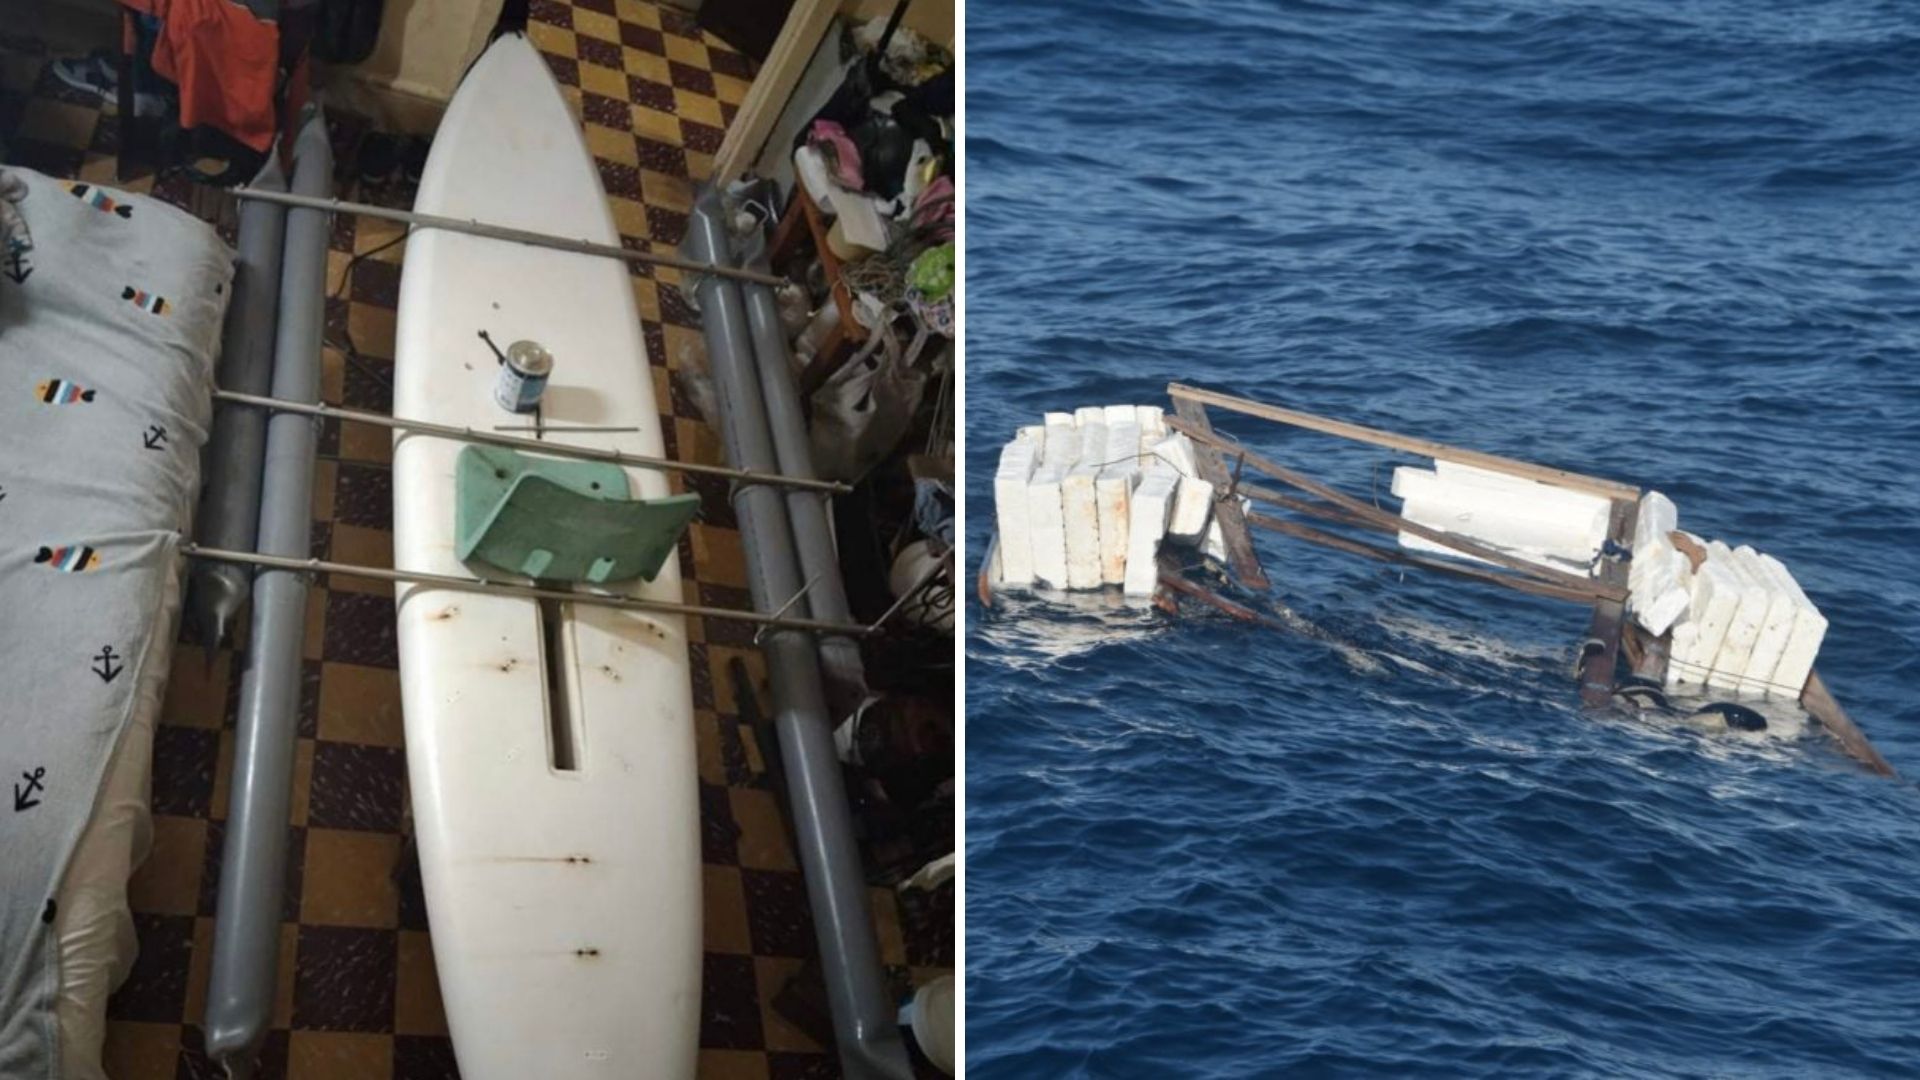 El pasado 23 de marzo el cubano Elián López Cabrera llegó a las costas de Florida en un windsurf (tabla de vela) y la Guardia Costera de EE.UU lo rescató